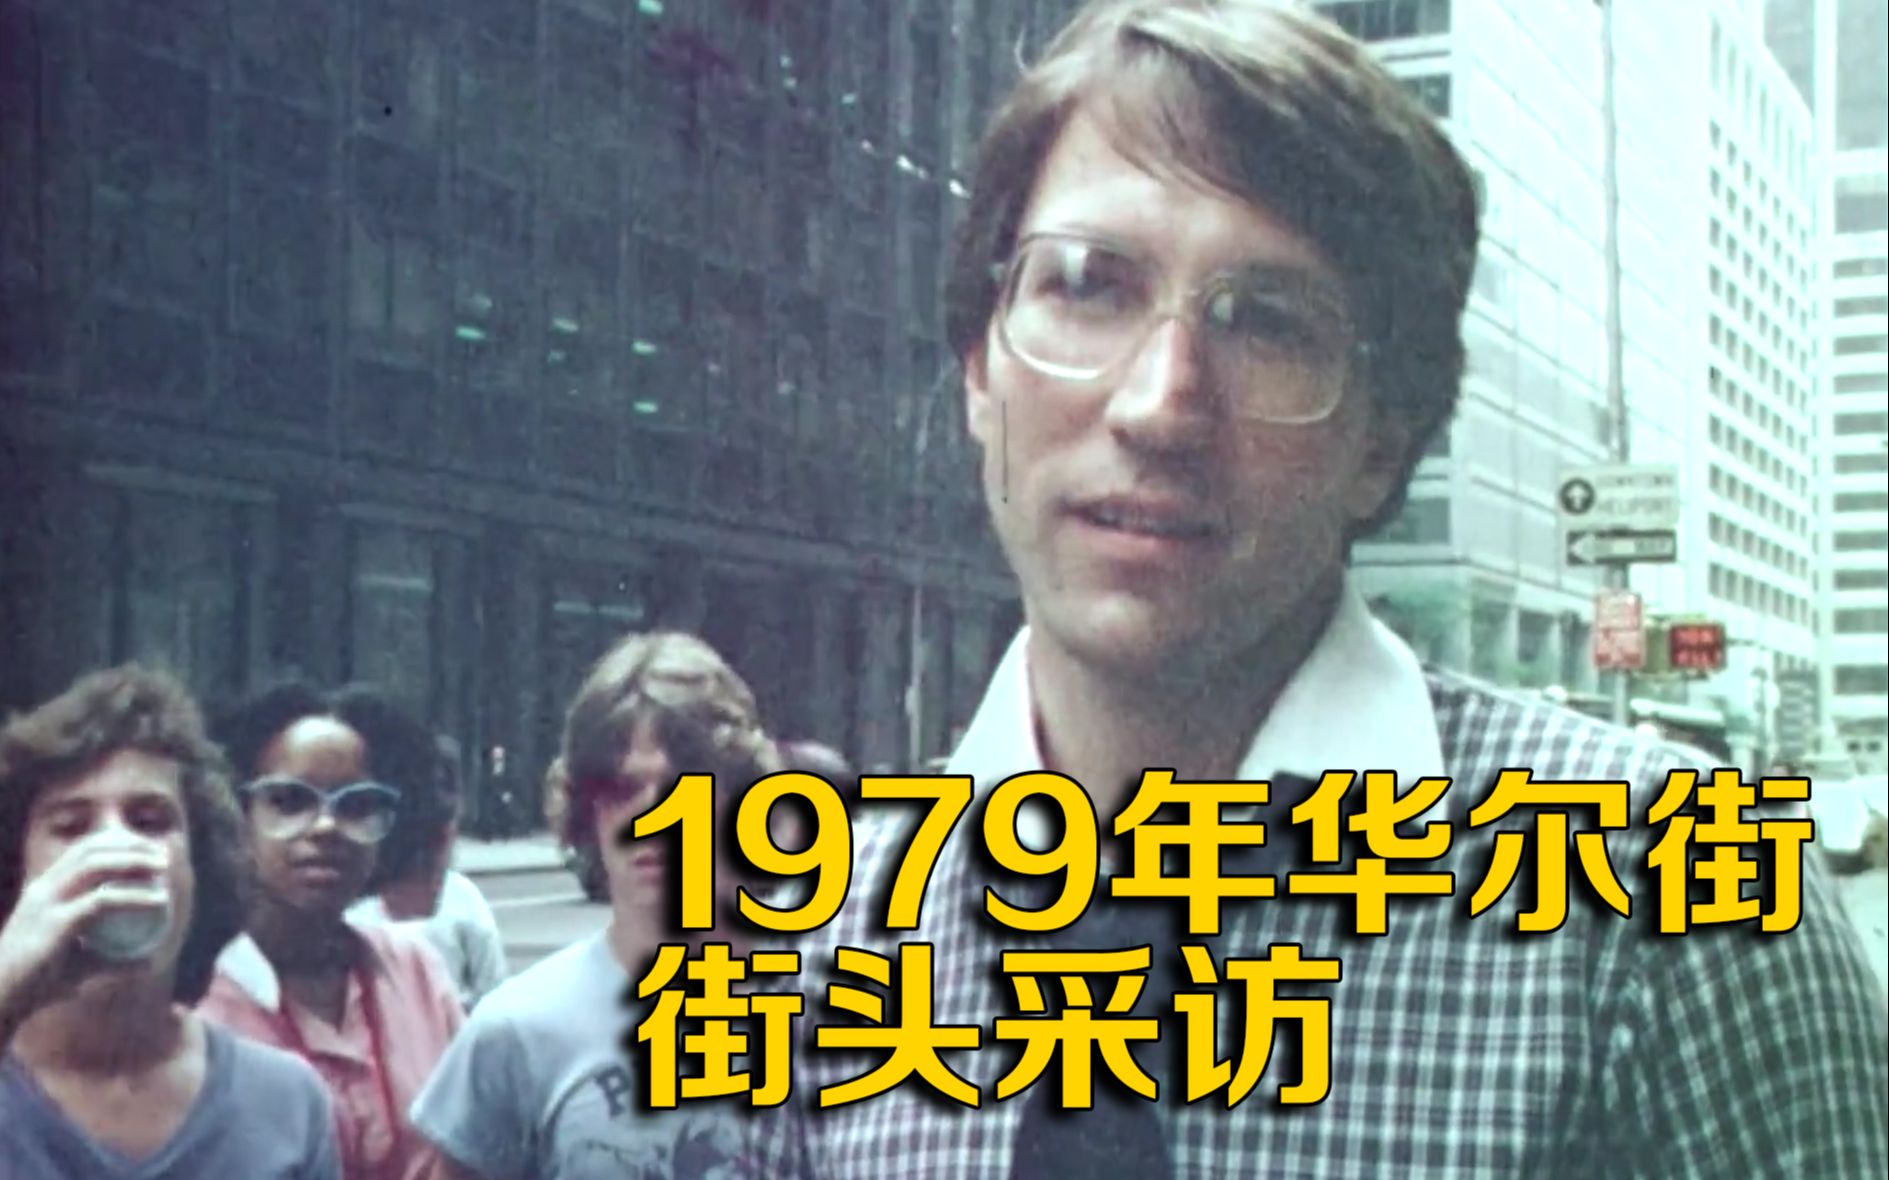 华尔街1979年街头采访，哪些事情发生了翻天覆地的变化？